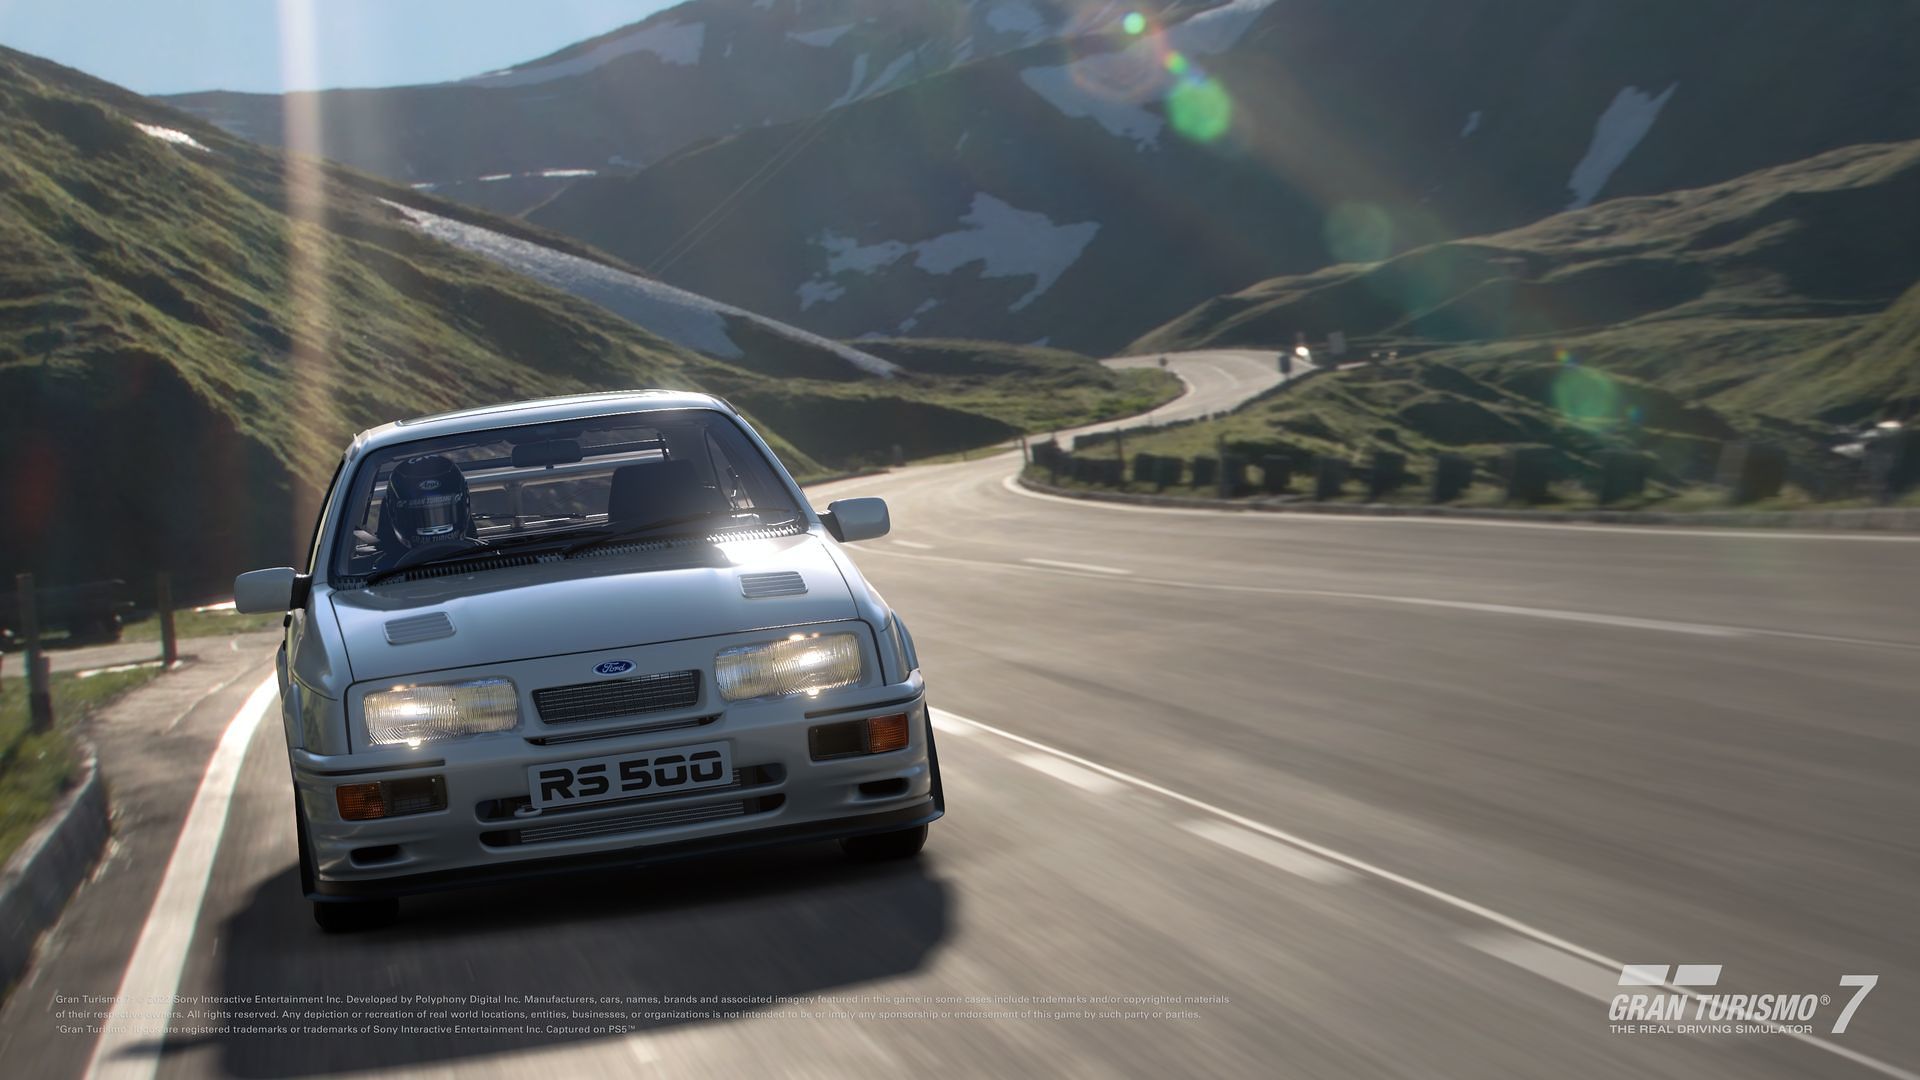 Gran Turismo 7 - data de lançamento, preço, edições disponíveis, bónus,  como reservar